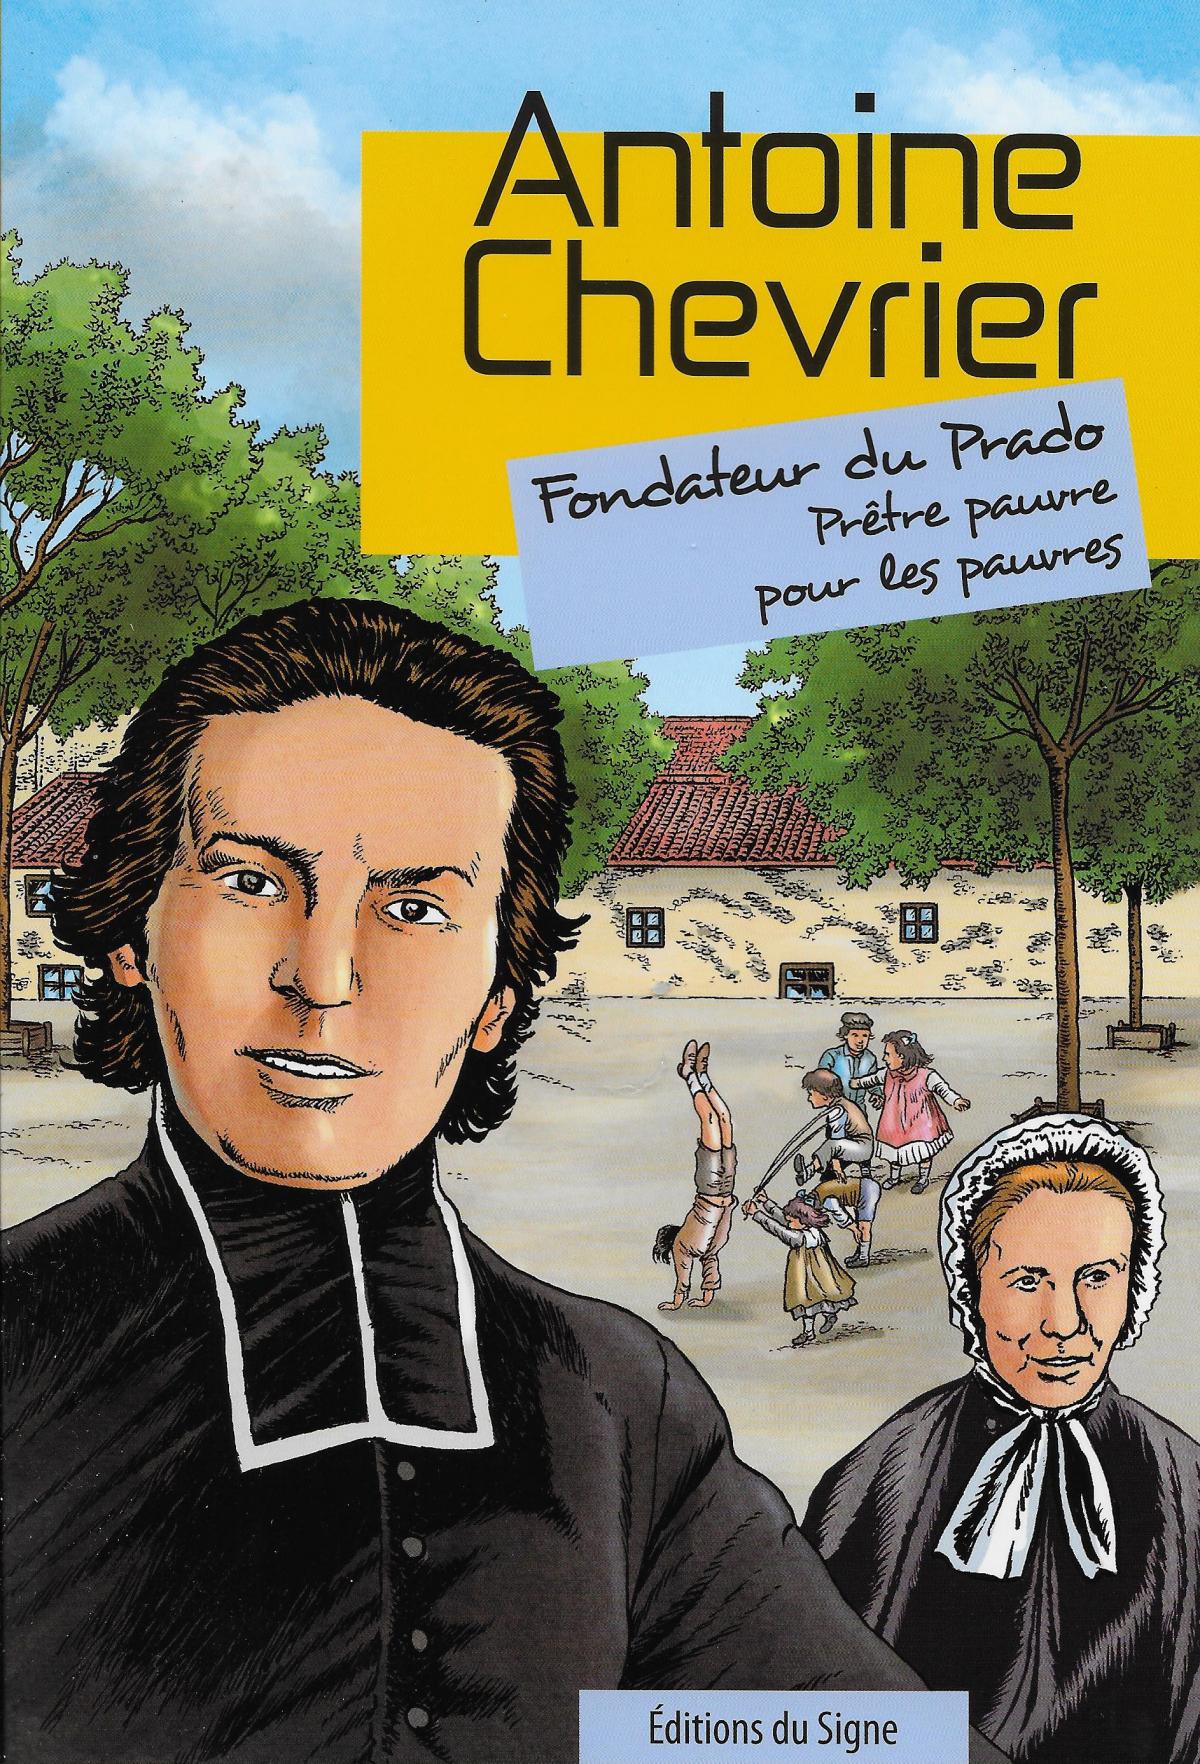 Antoine Chevrier, Fondateur du Prado, Prêtre pauvre parmi les pauvres